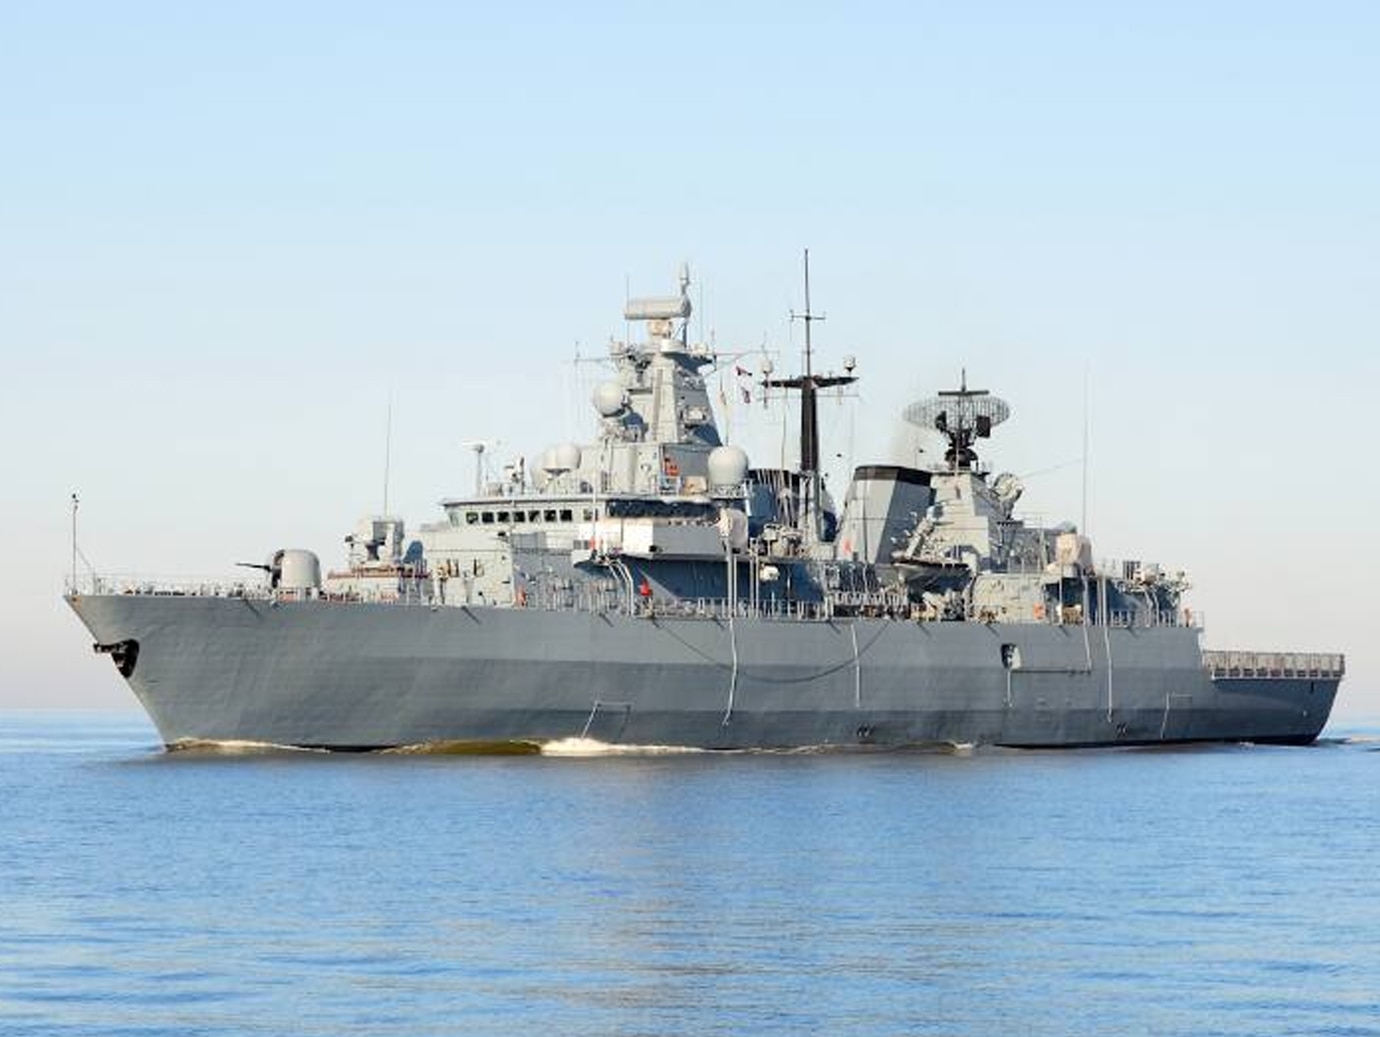 War ship on the sea